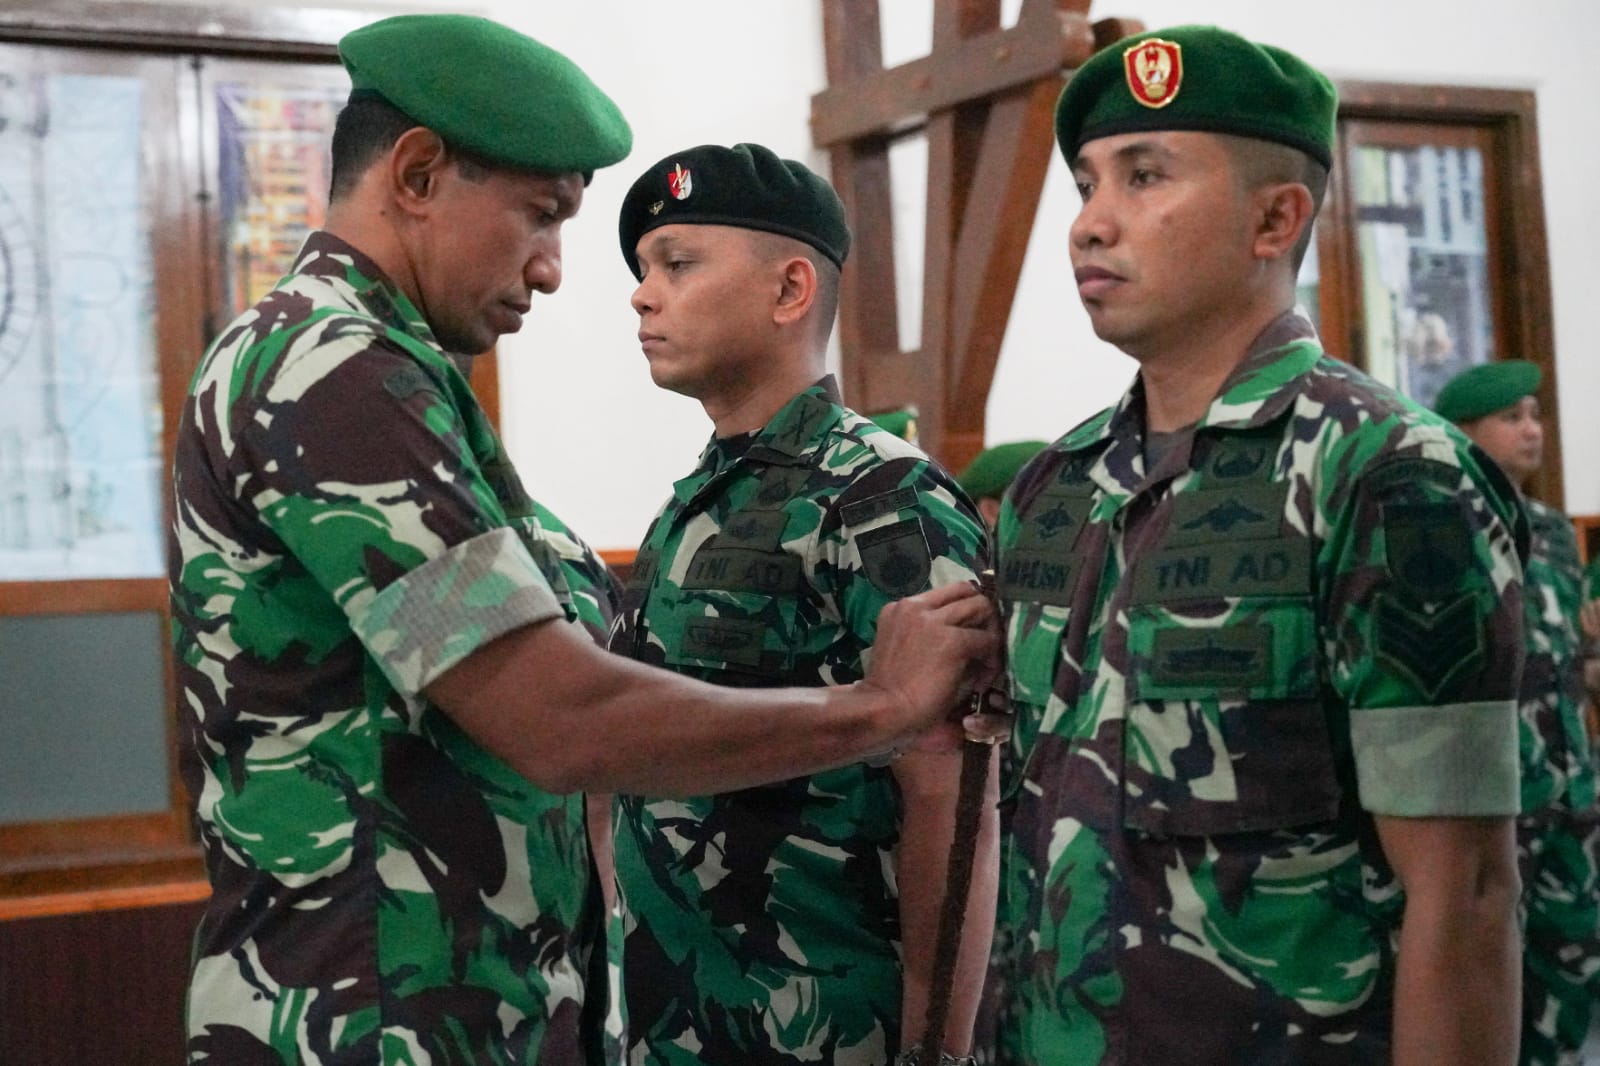 Danrem 074/Warastratama Terima Laporan Korps KP Perwira serta melantik KP Bintara dan Tamtama